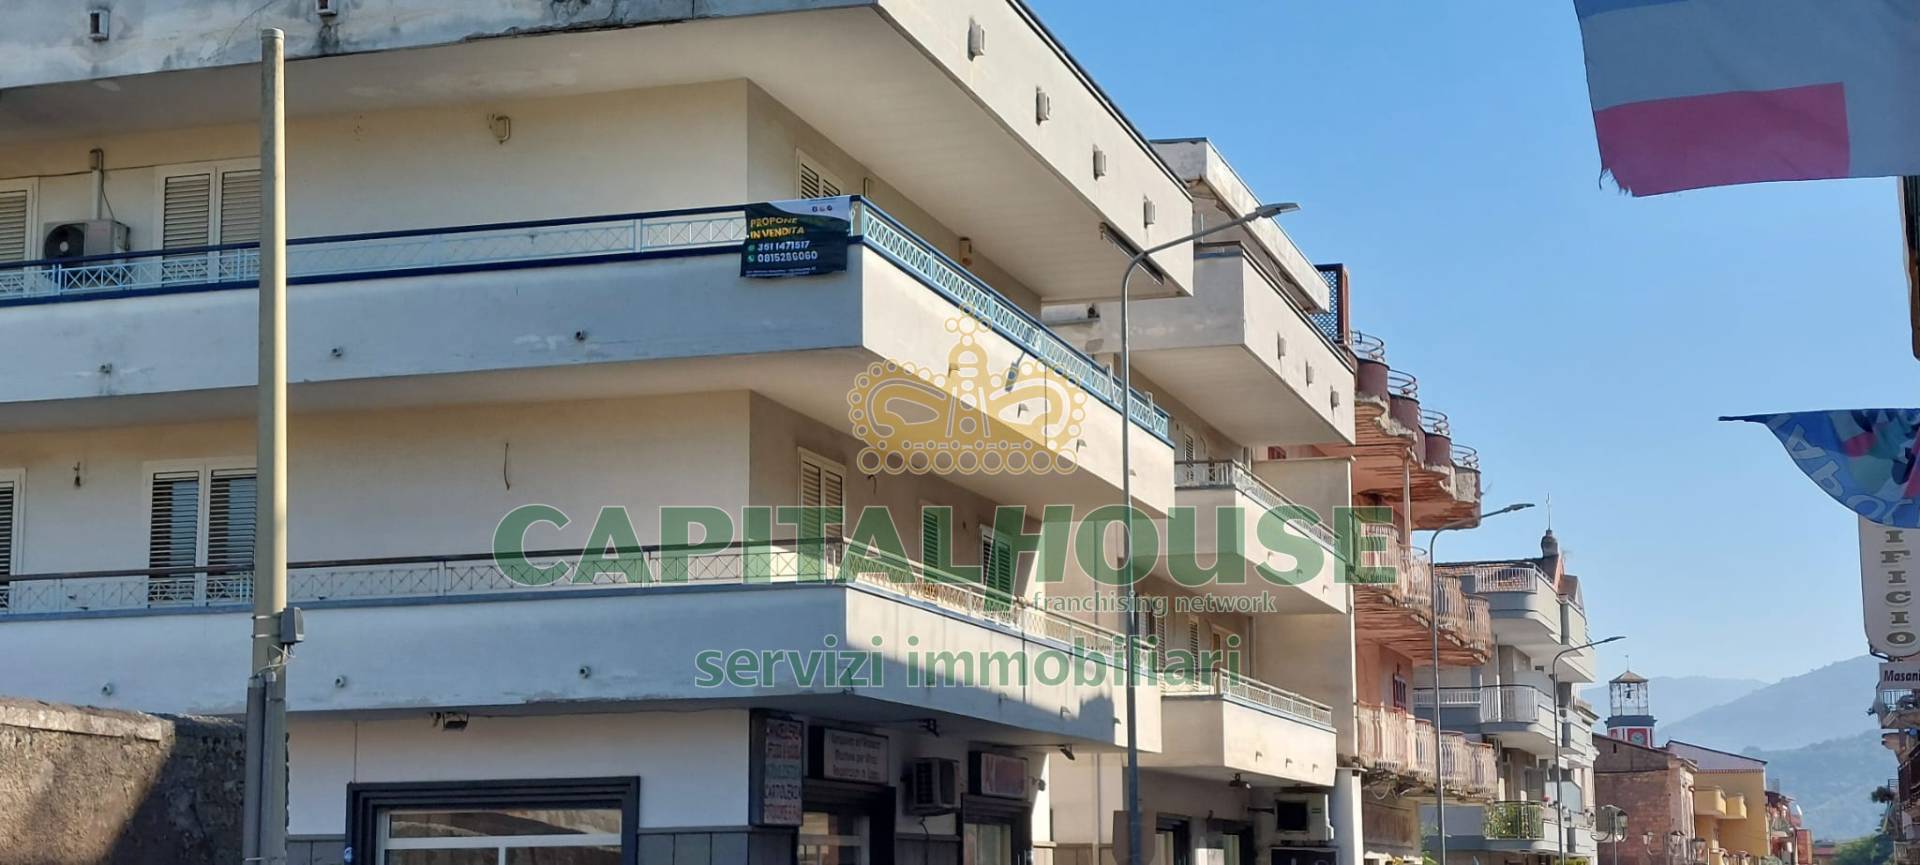 Appartamento in vendita a San Gennaro Vesuviano, 4 locali, prezzo € 125.000 | PortaleAgenzieImmobiliari.it